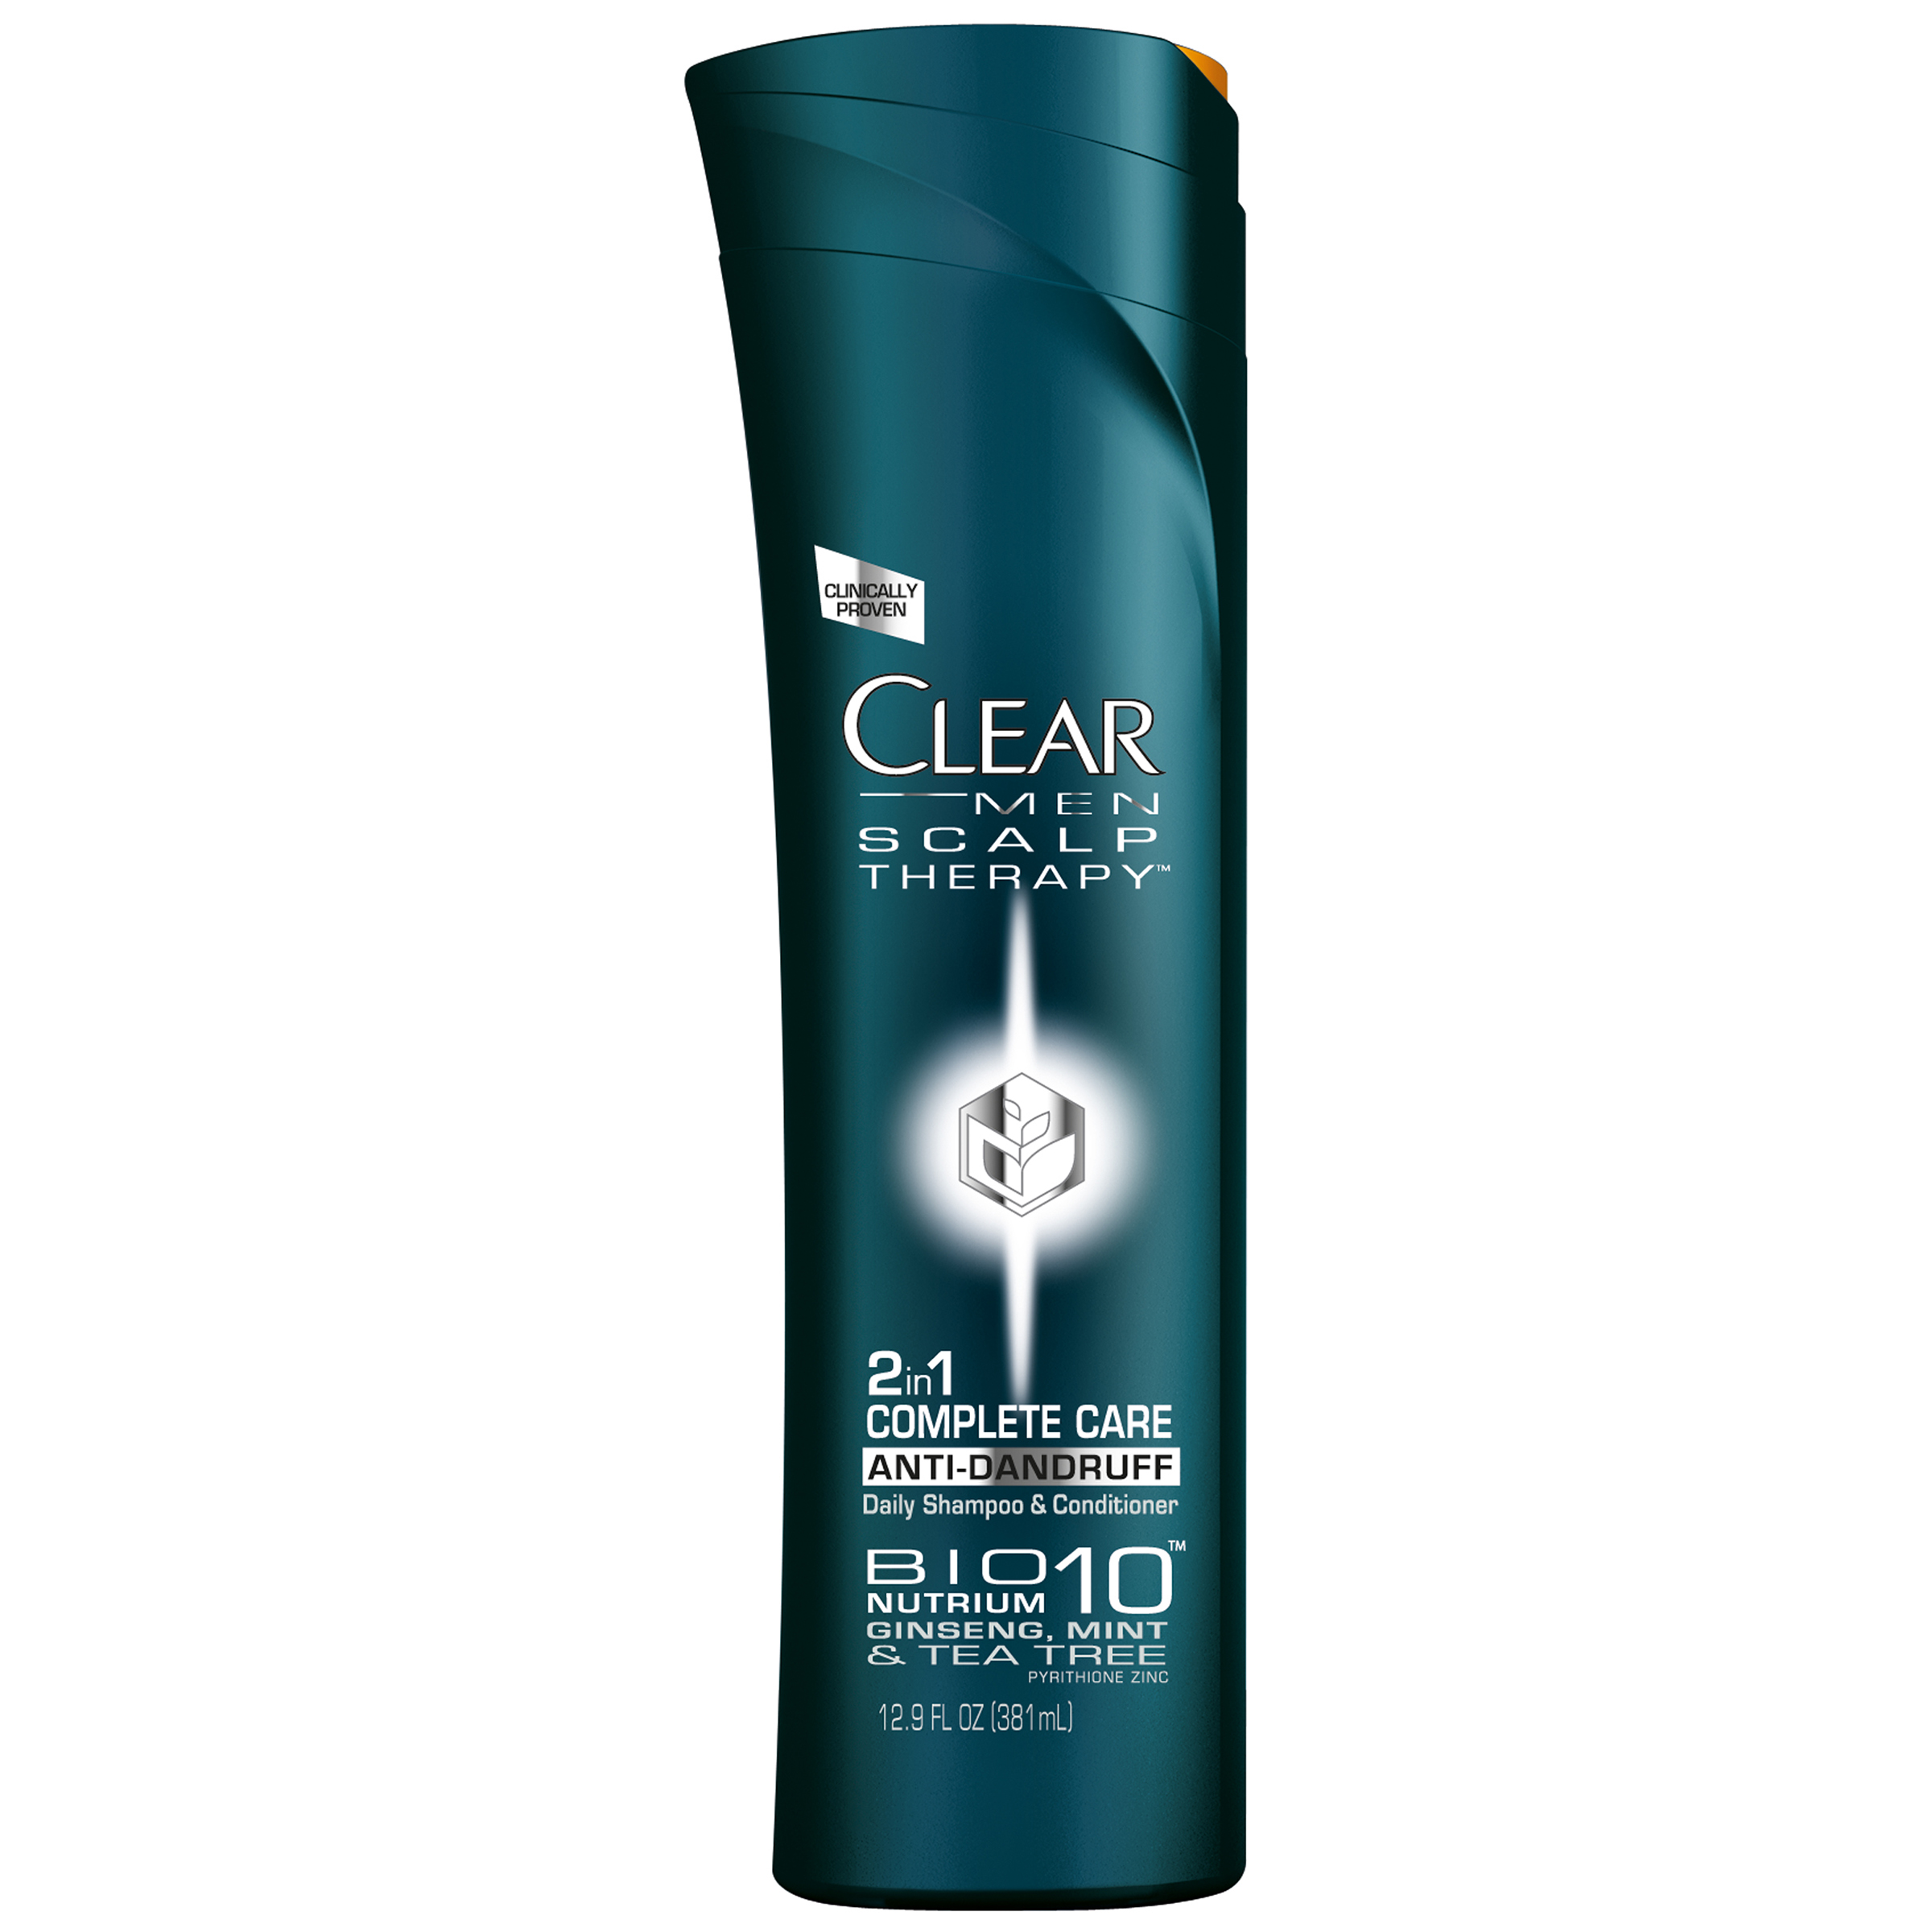 Clear Men Scalp Therapy Shampoo & Conditioner Anti-Dandruff Complete Care 2 in 1 12.9 fl oz (381 ml)